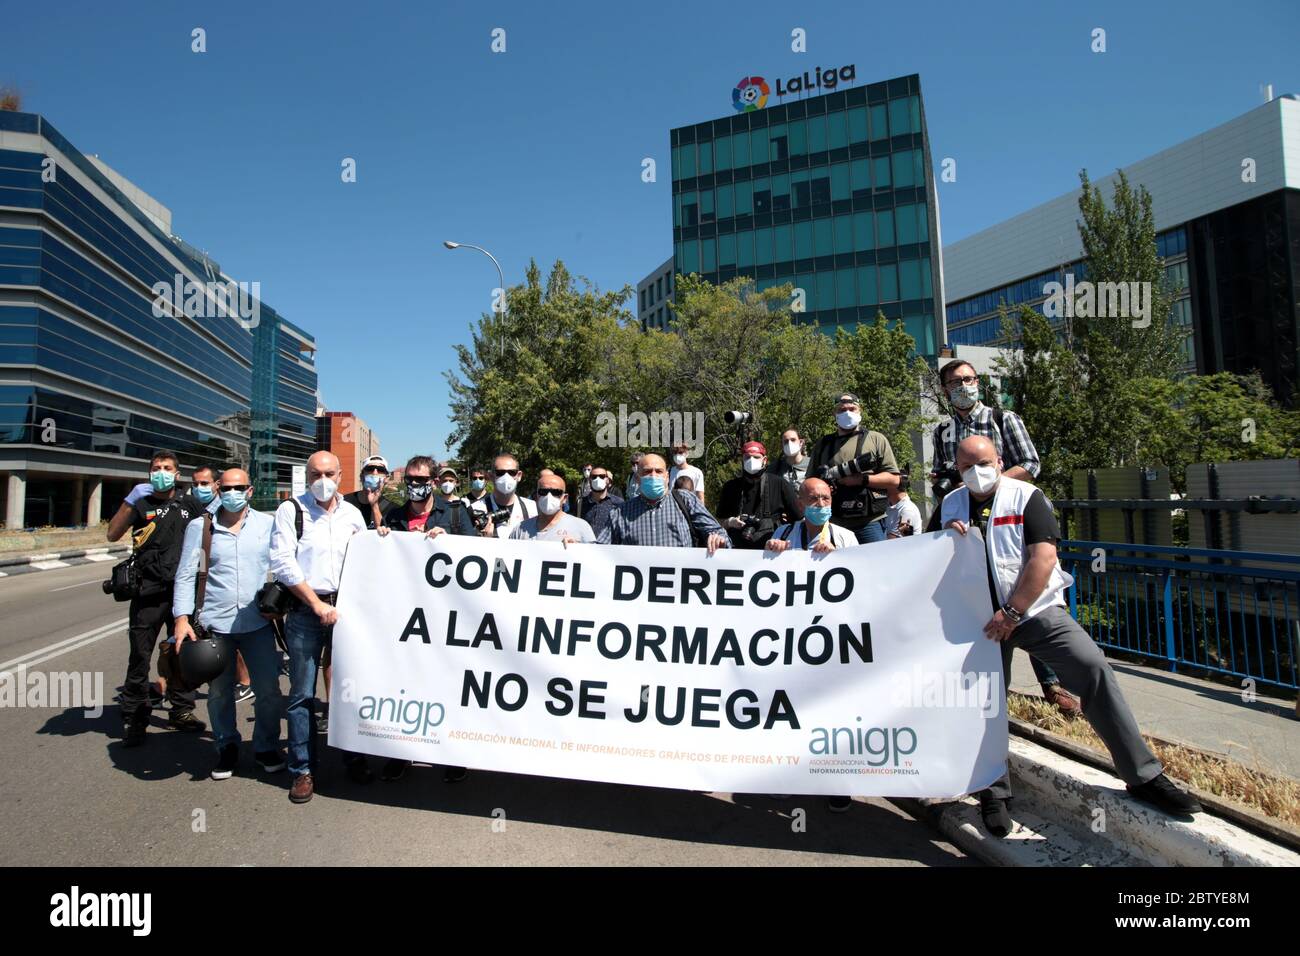 Madrid, España, 28/05/2020.- 'el derecho a la información no es un juego'  el lema de los fotógrafos de la prensa demostraciónPos muestran frente al  edificio de la Liga del fútbol español contra